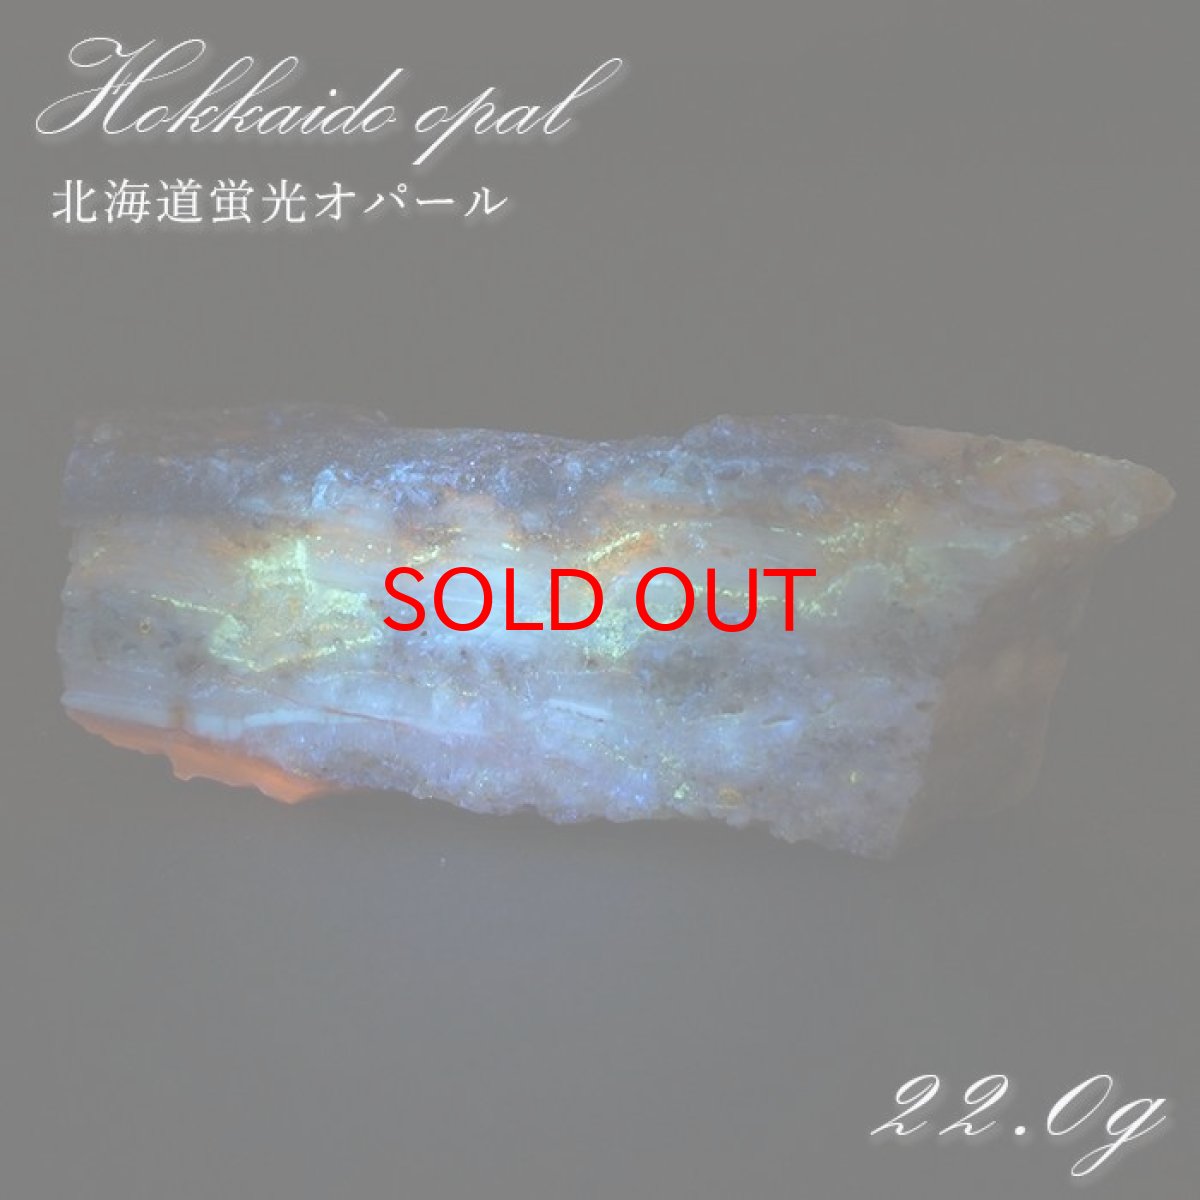 画像1: 北海道蛍光オパール 原石 約22g 北海道産 一点もの 天然石 パワーストーン カラーストーン (1)